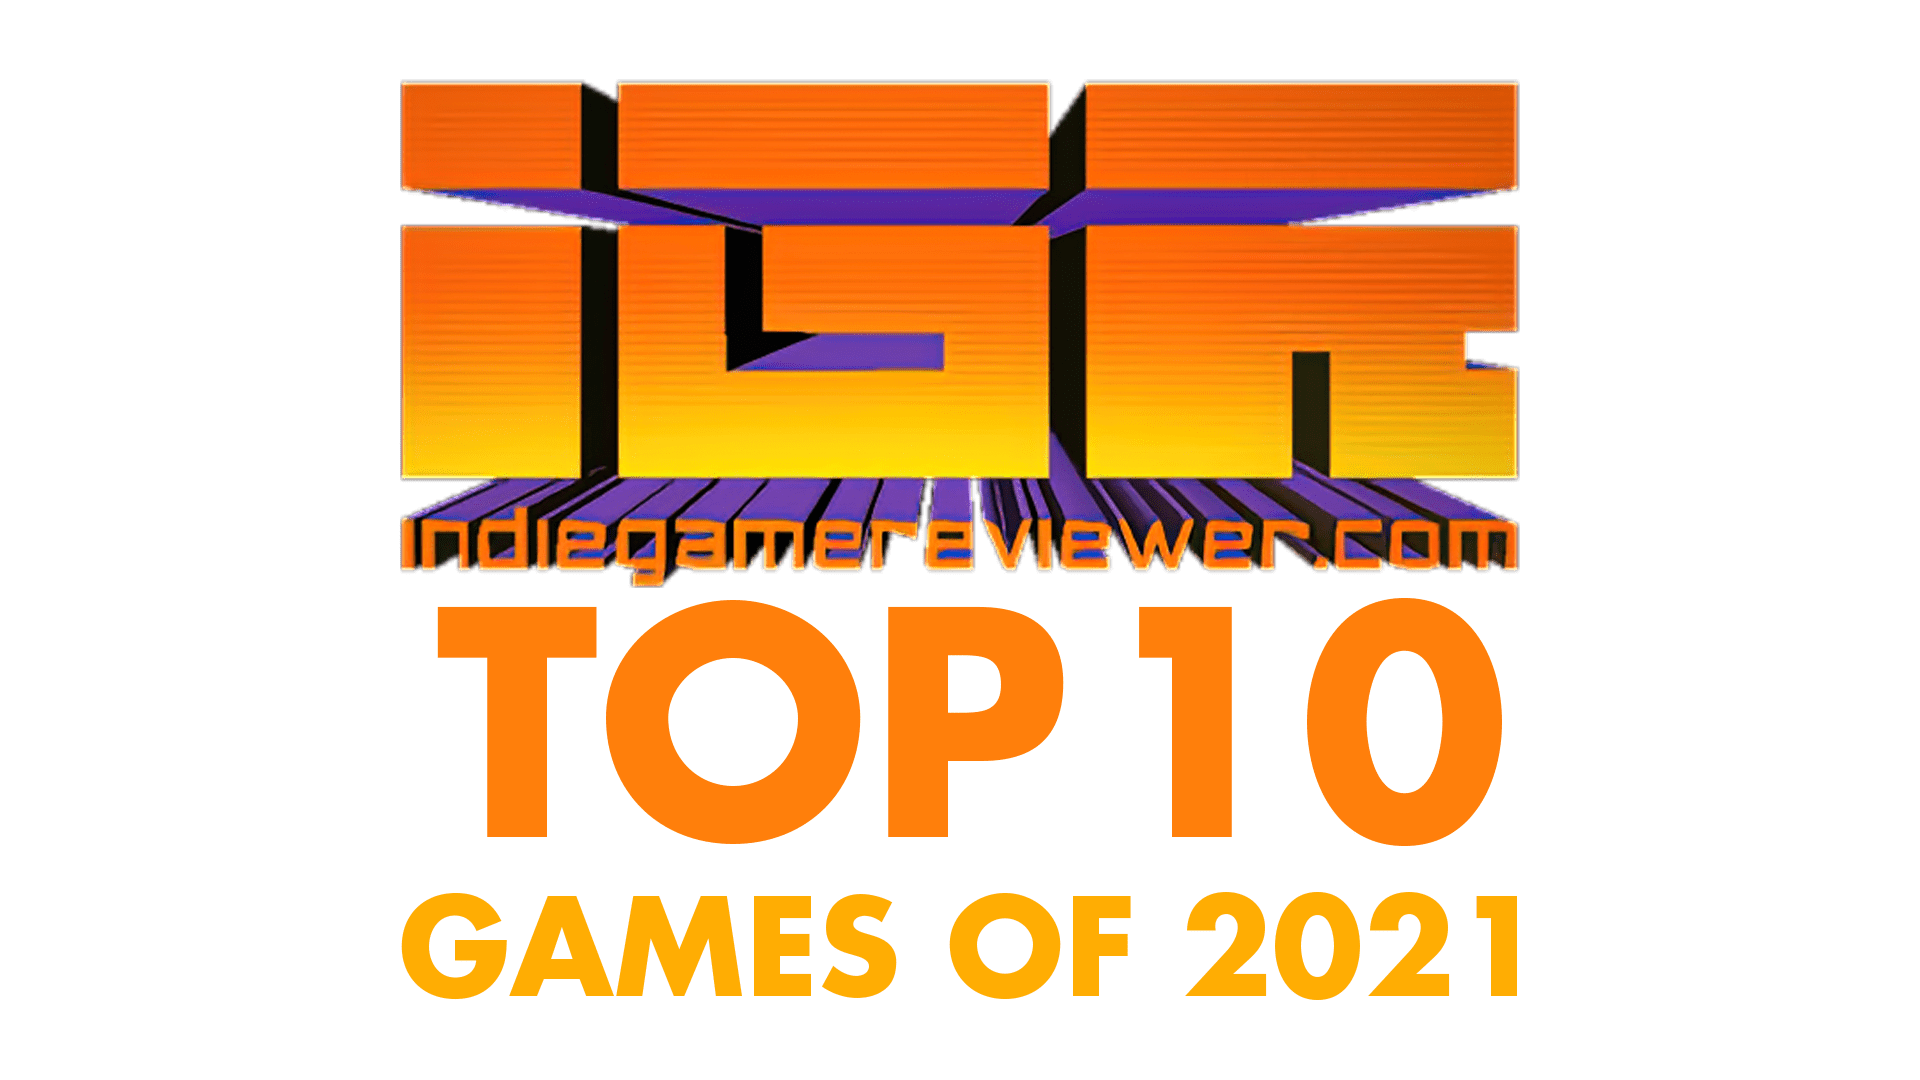 IGR TOP 10 of 2021